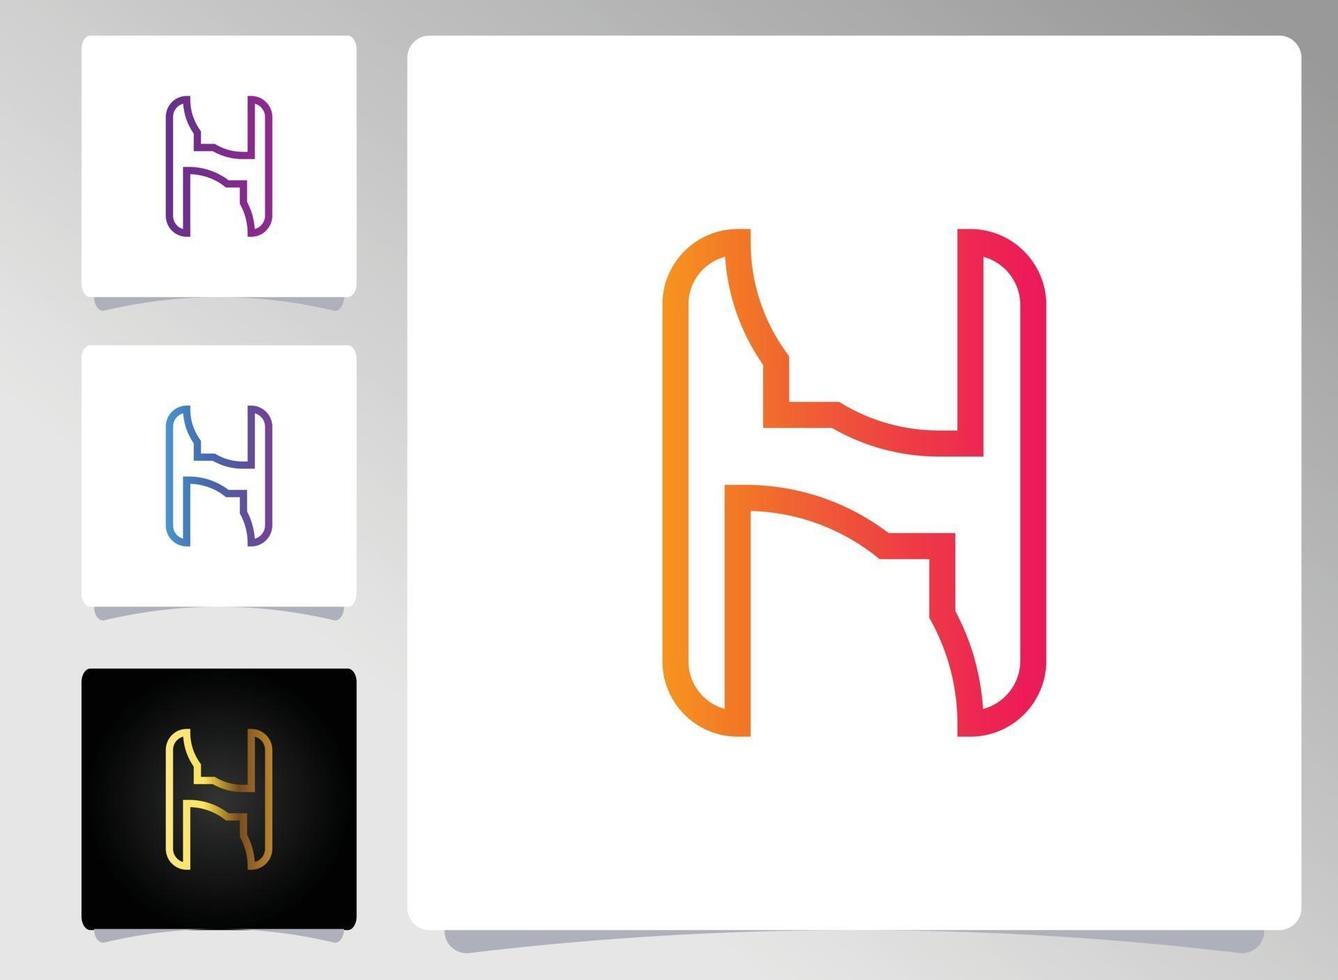 conception abstraite de logo de lettre h vecteur